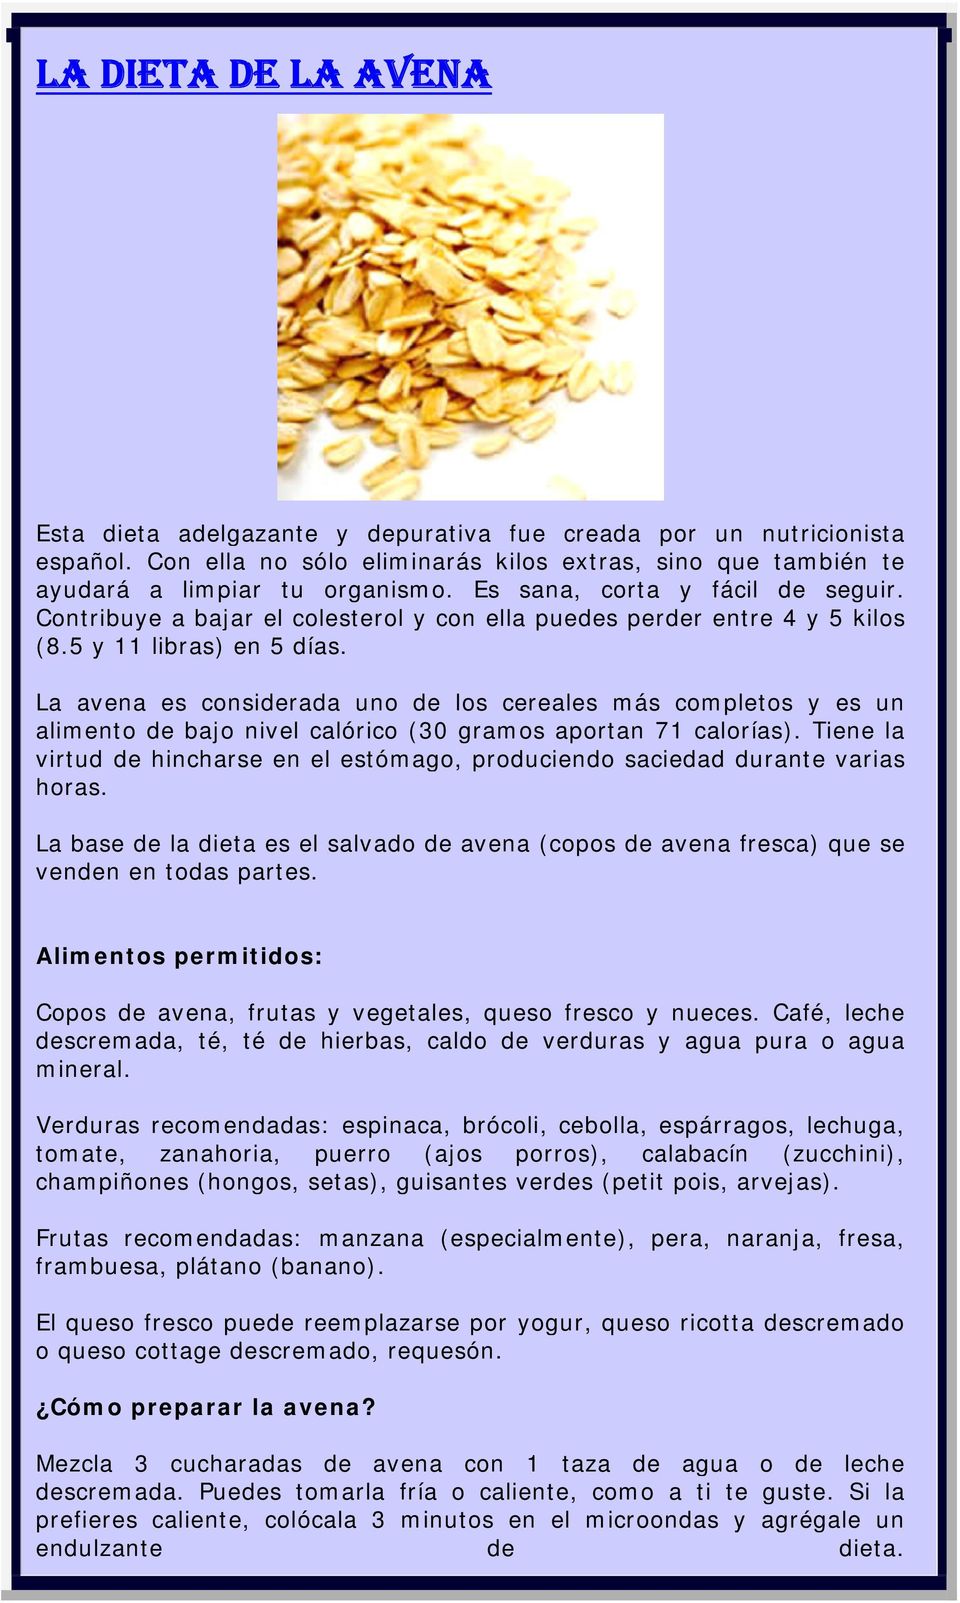 La avena es considerada uno de los cereales más completos y es un alimento de bajo nivel calórico (30 gramos aportan 71 calorías).